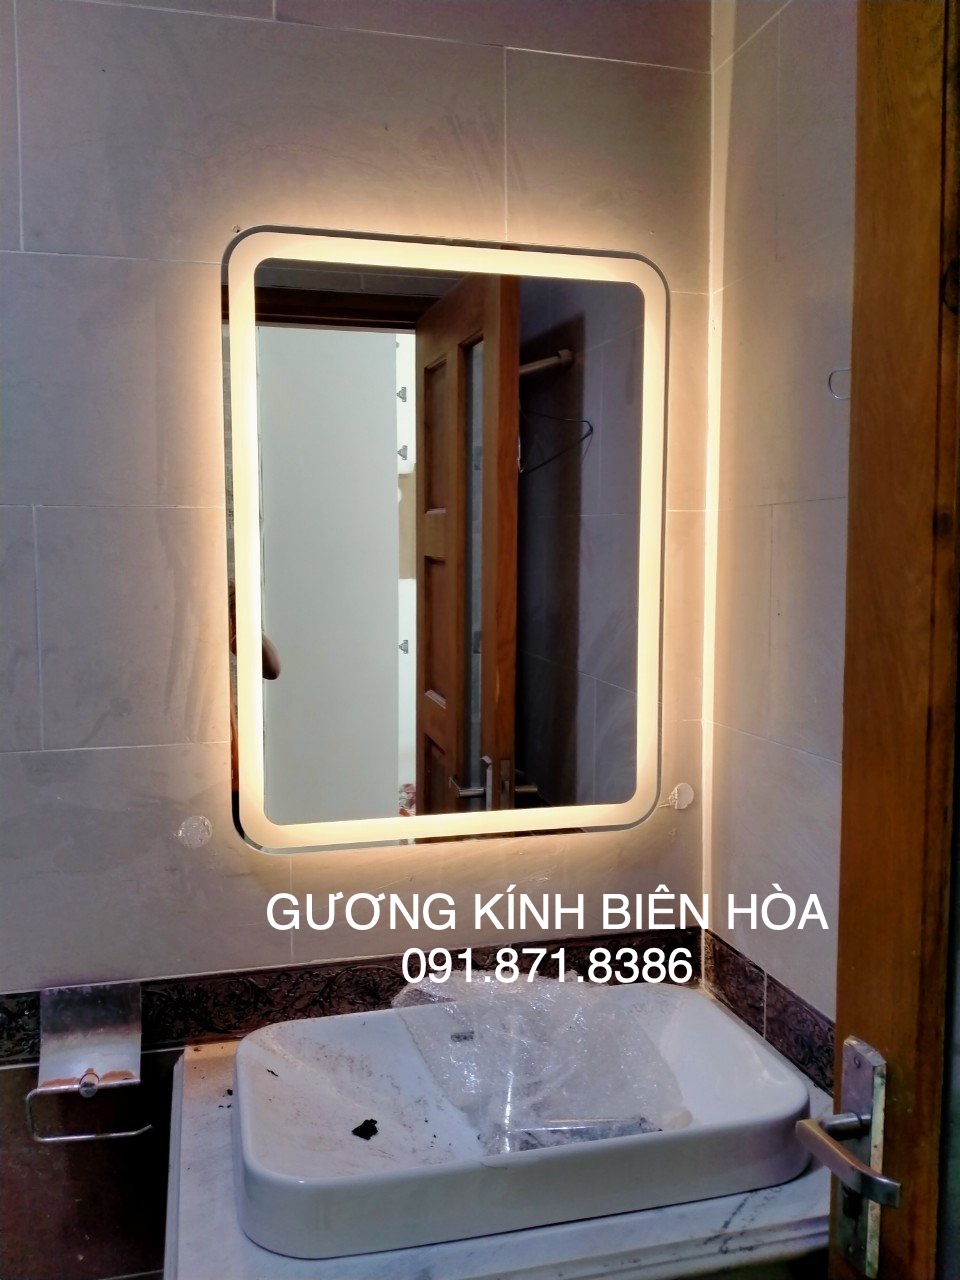 Gương đèn led cảm ứng nhà tắm Biên Hòa Đồng Nai